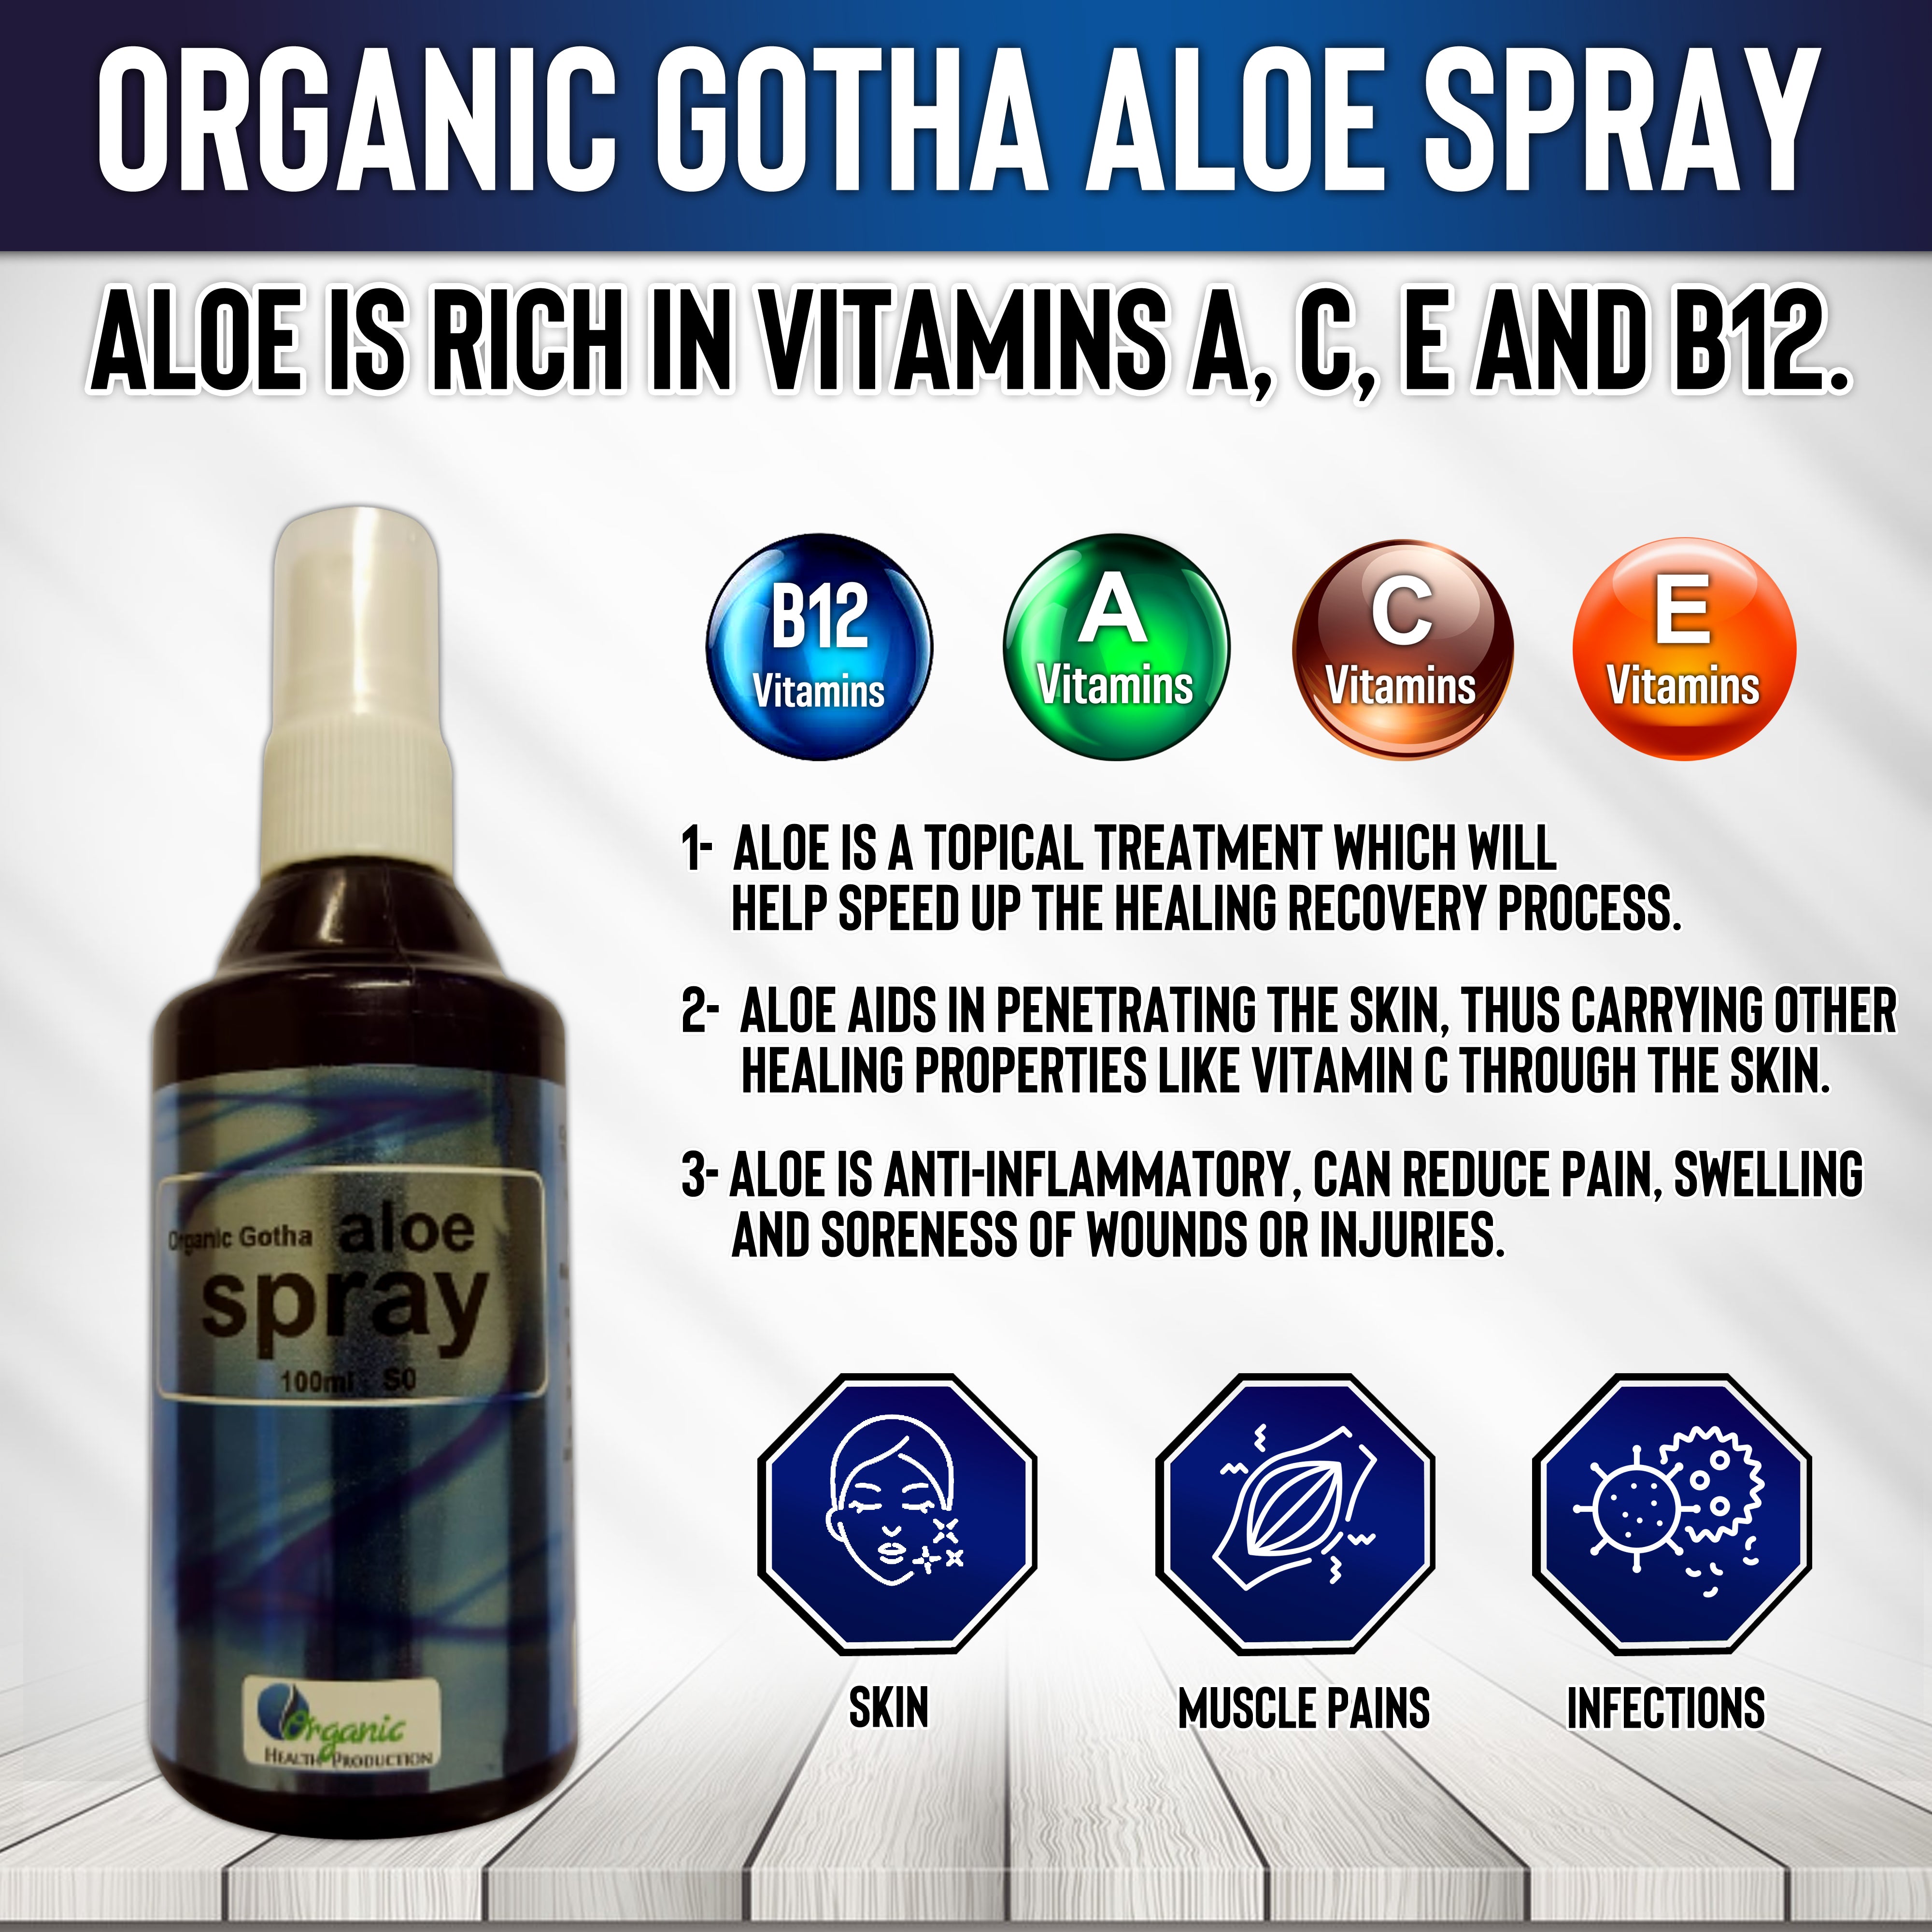 Organic Gotha aloe spray